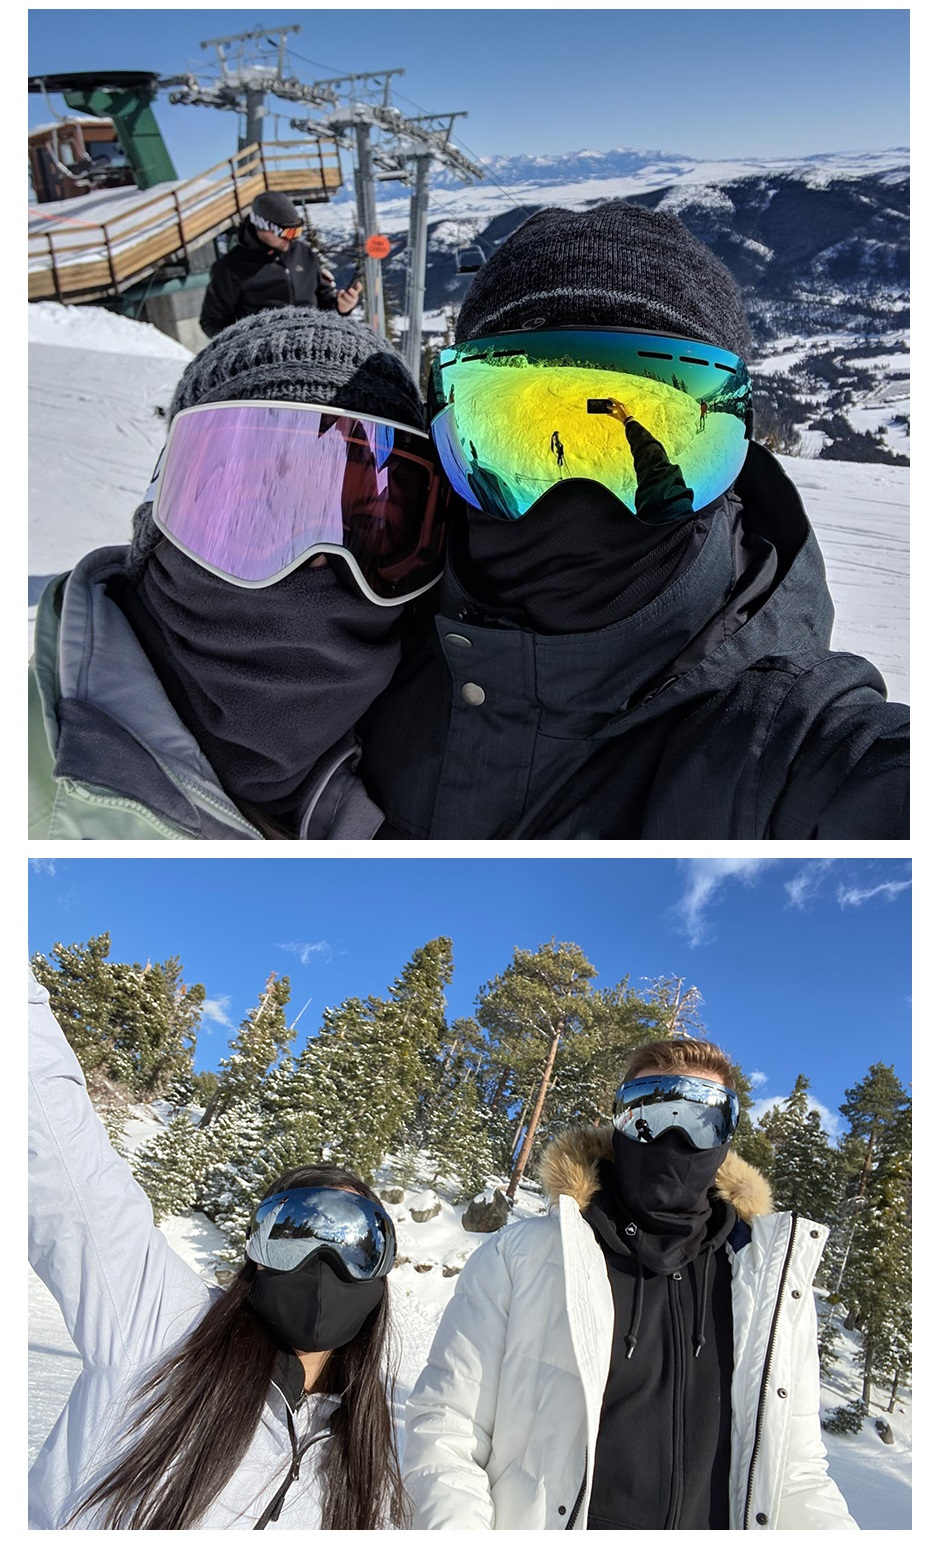 Mujer Hombre Esquí de nieve Snowboard Antivaho Polvo Protección de sol  Rosado Sunnimix Gafas de nieve para esquiar